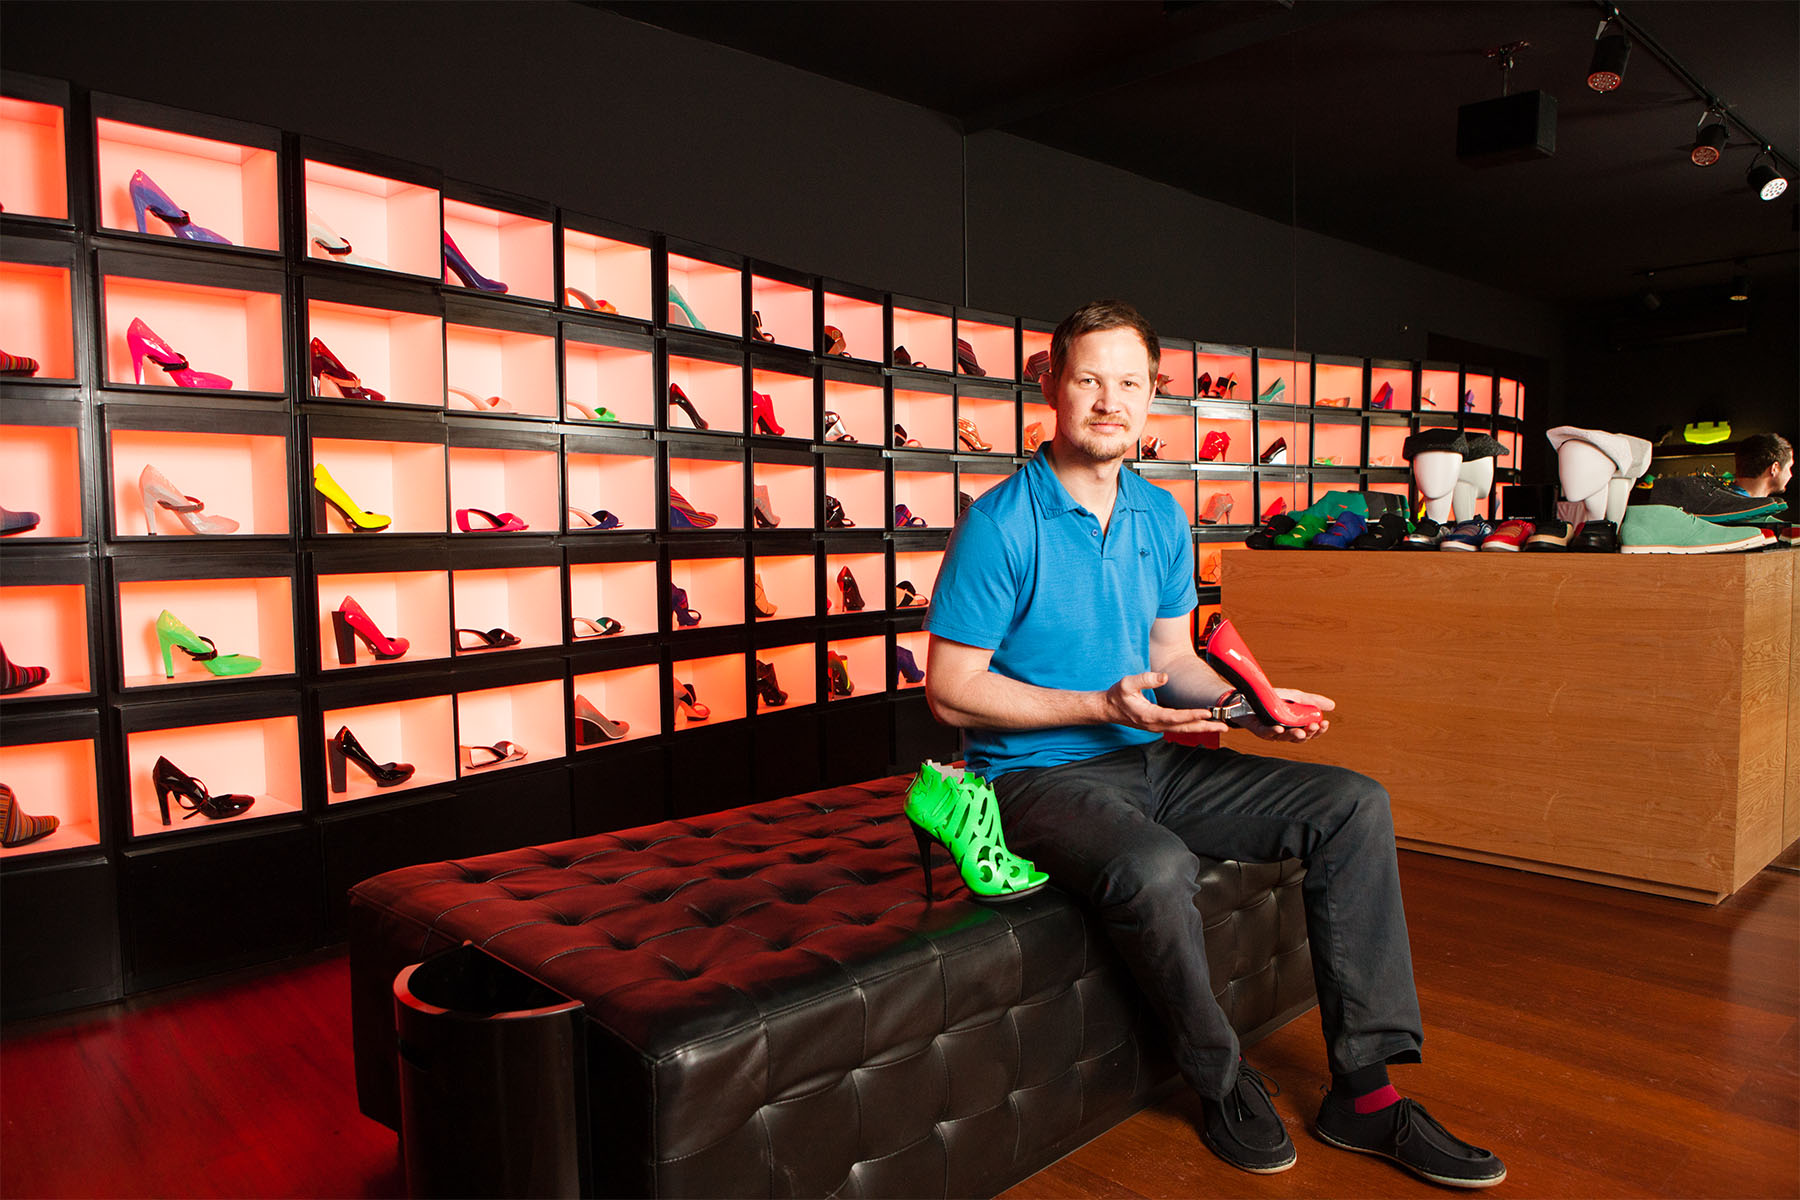 Galahad Clark, siebente Generation der Schuhdynastie, will mit Maßschuhen aus dem 3D-Drucker die Fashionwelt revolutionieren